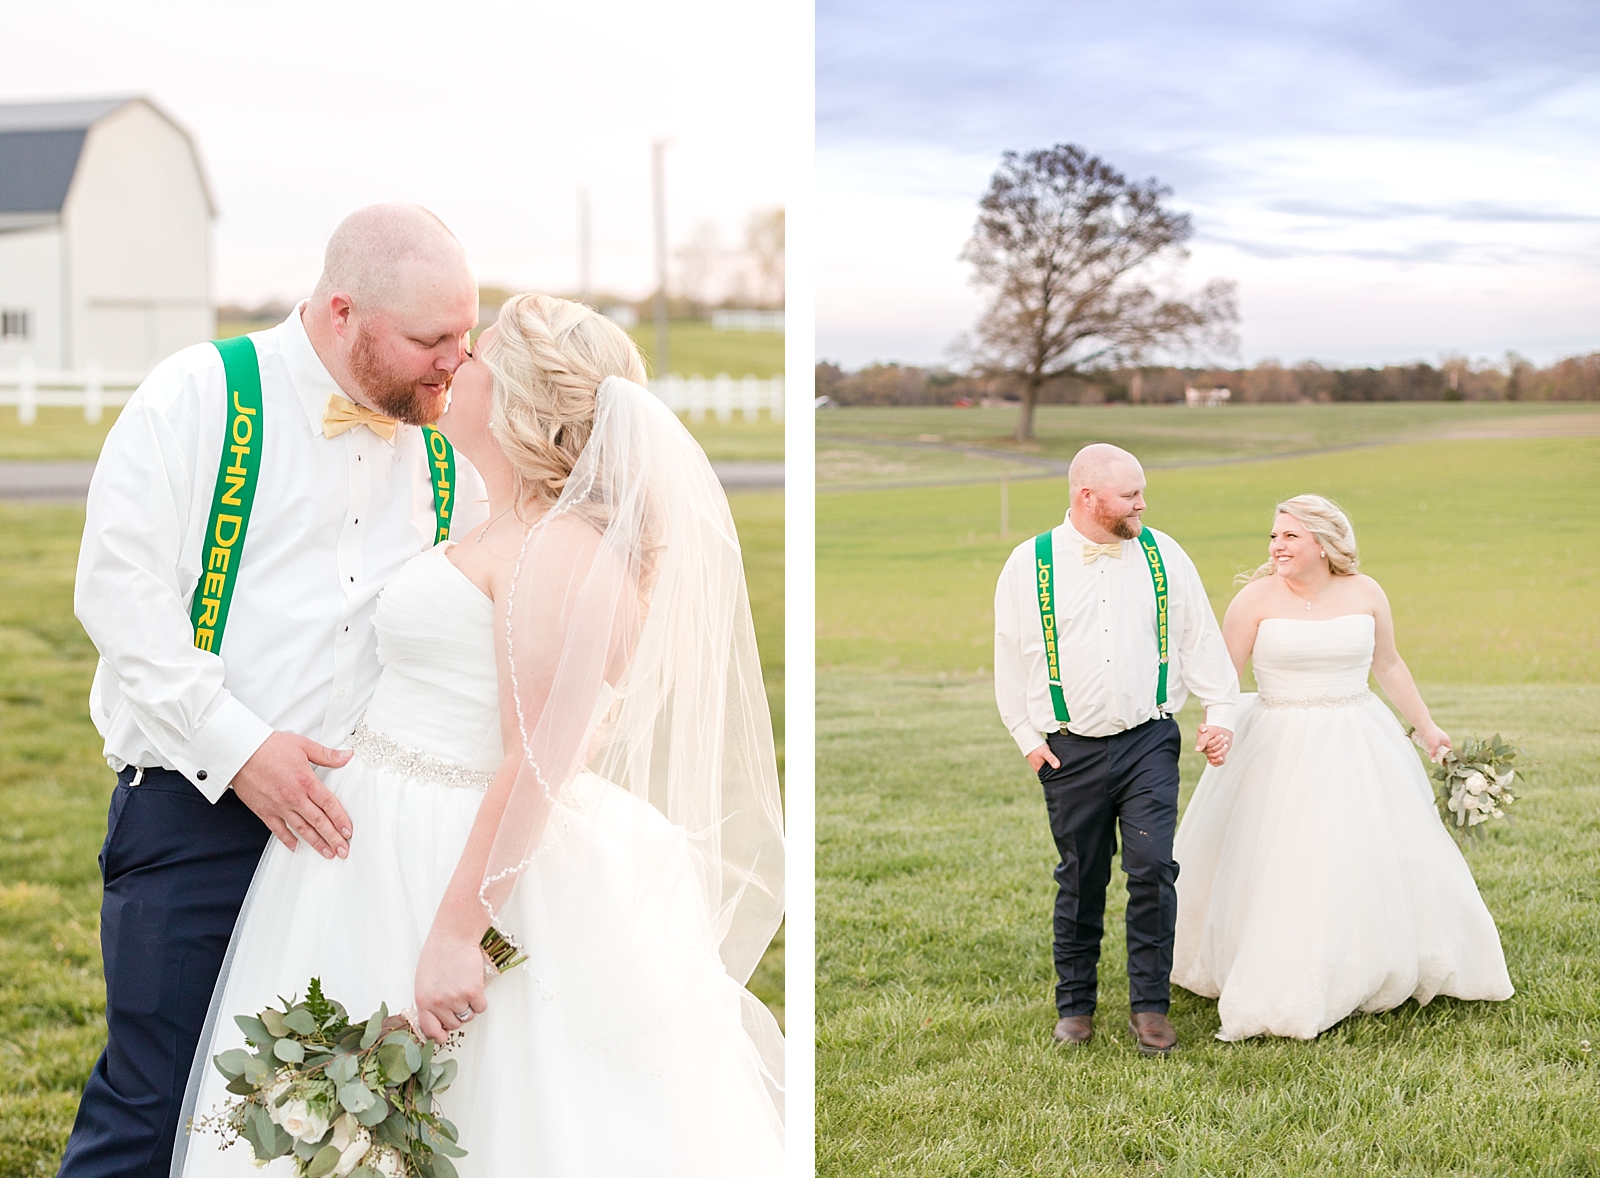 Spring Bowles Farm Wedding bride and groom